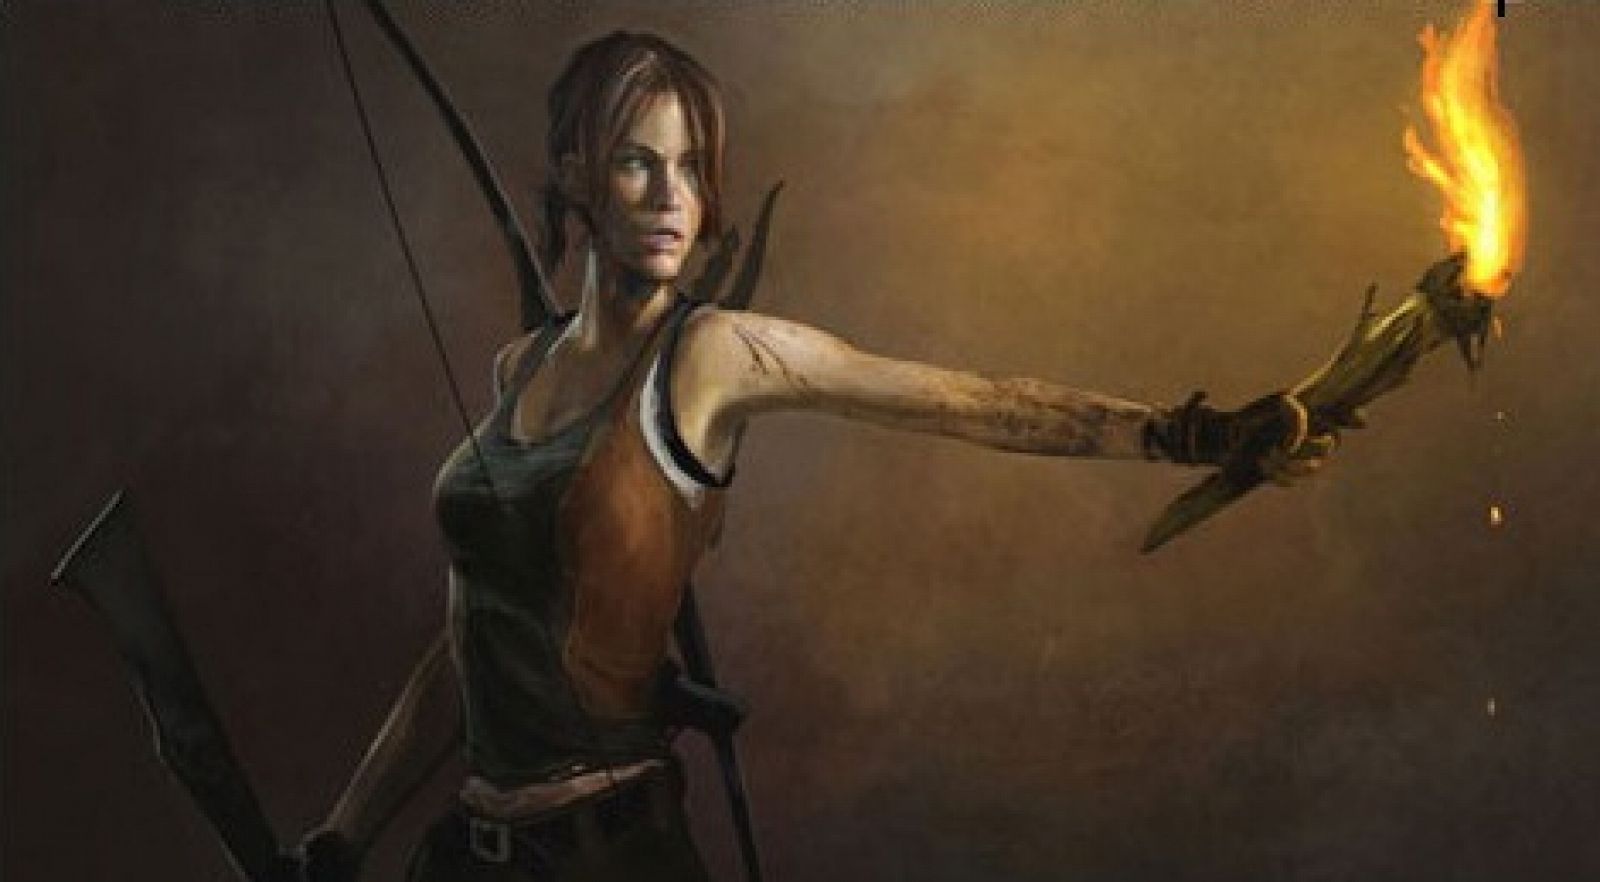 Una de las imágenes que desvelan la nueva imagen de Lara Croft.